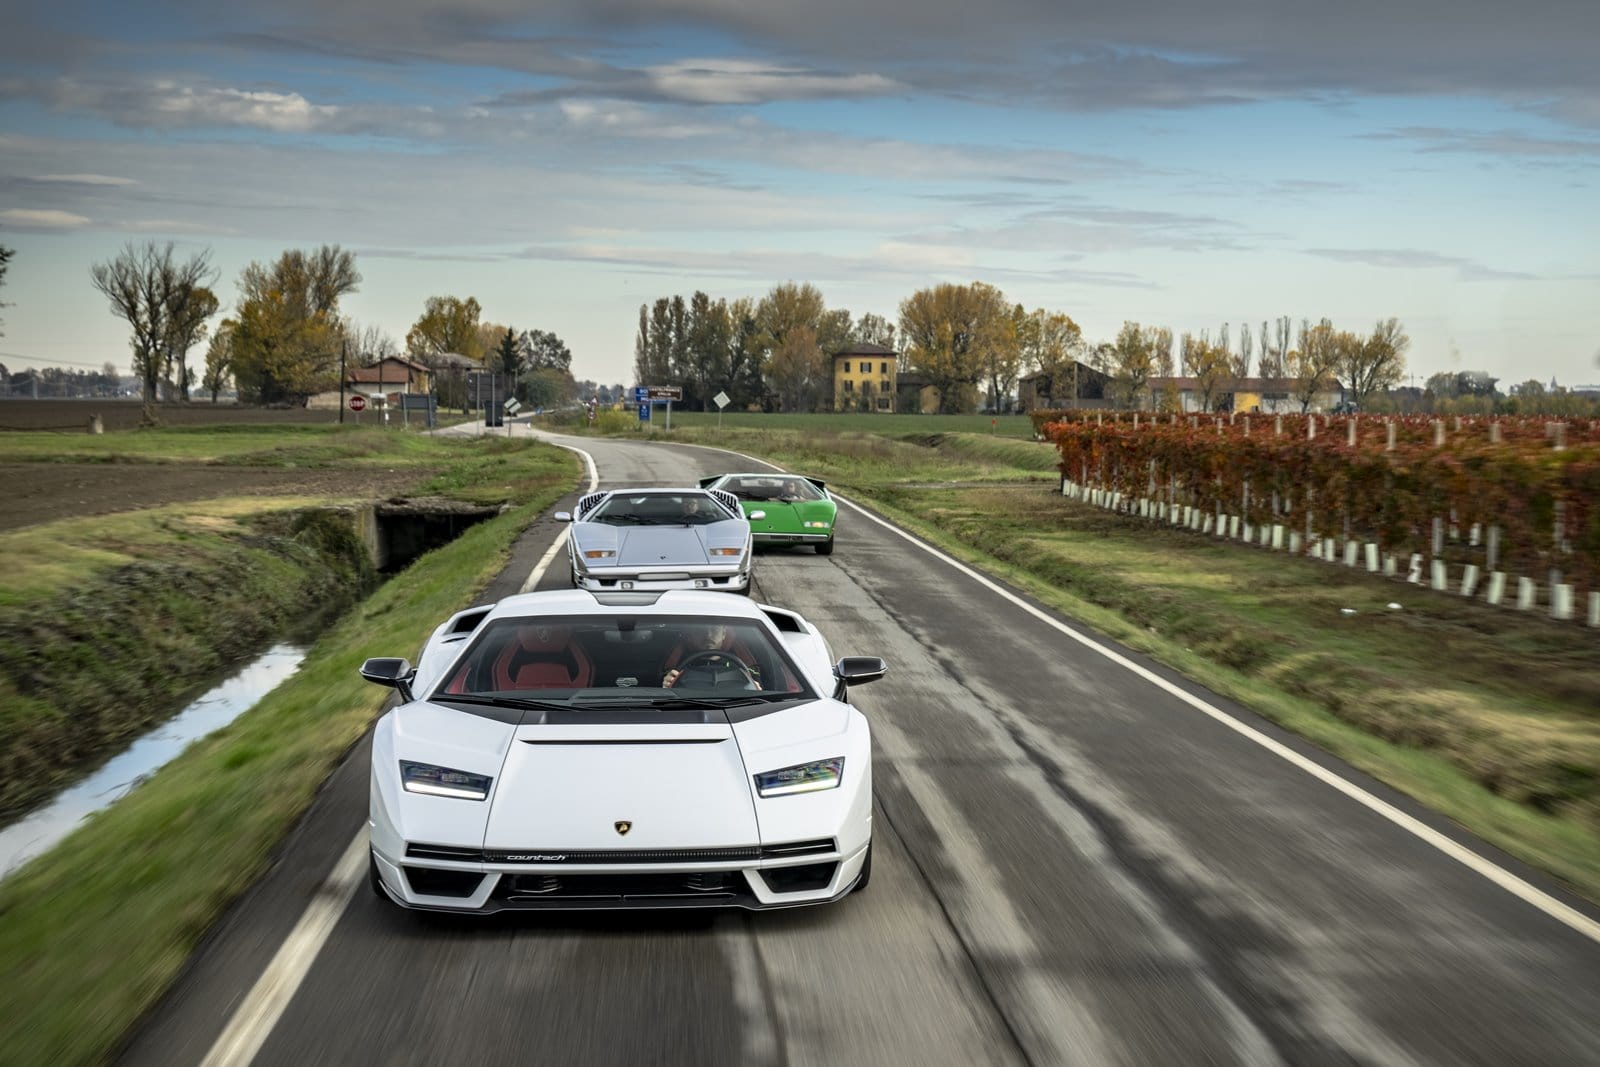 The Lamborghini Countach looks palm on the road